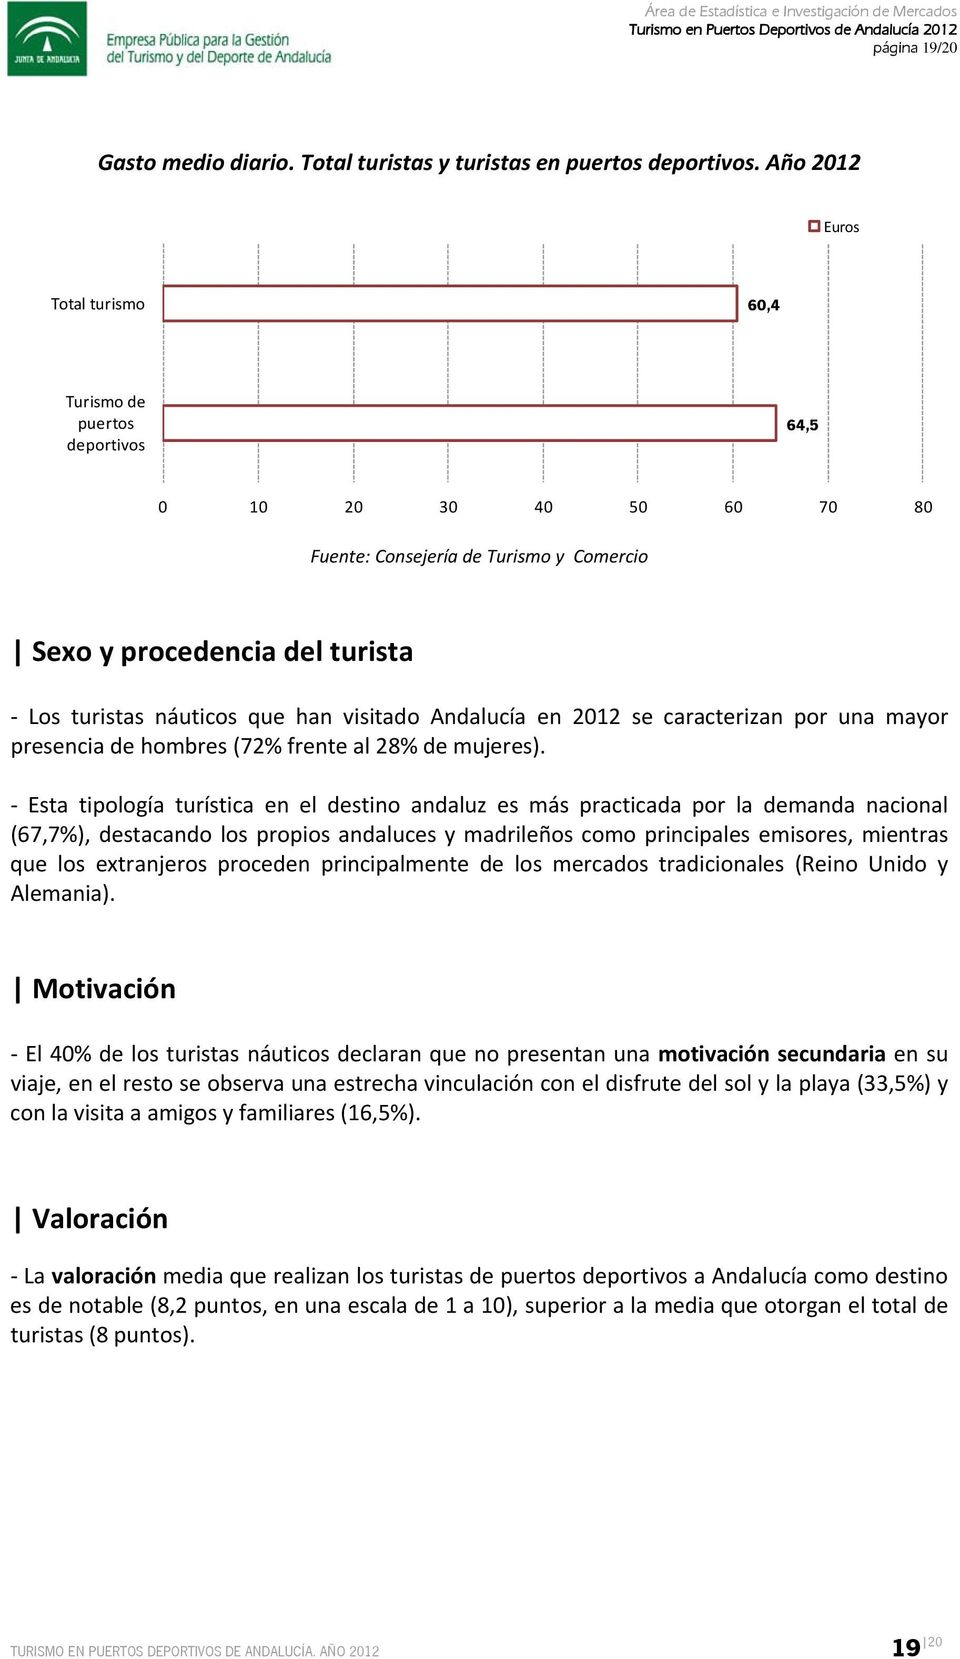 visitado Andalucía en 2012 se caracterizan por una mayor presencia de hombres (72% frente al 28% de mujeres).